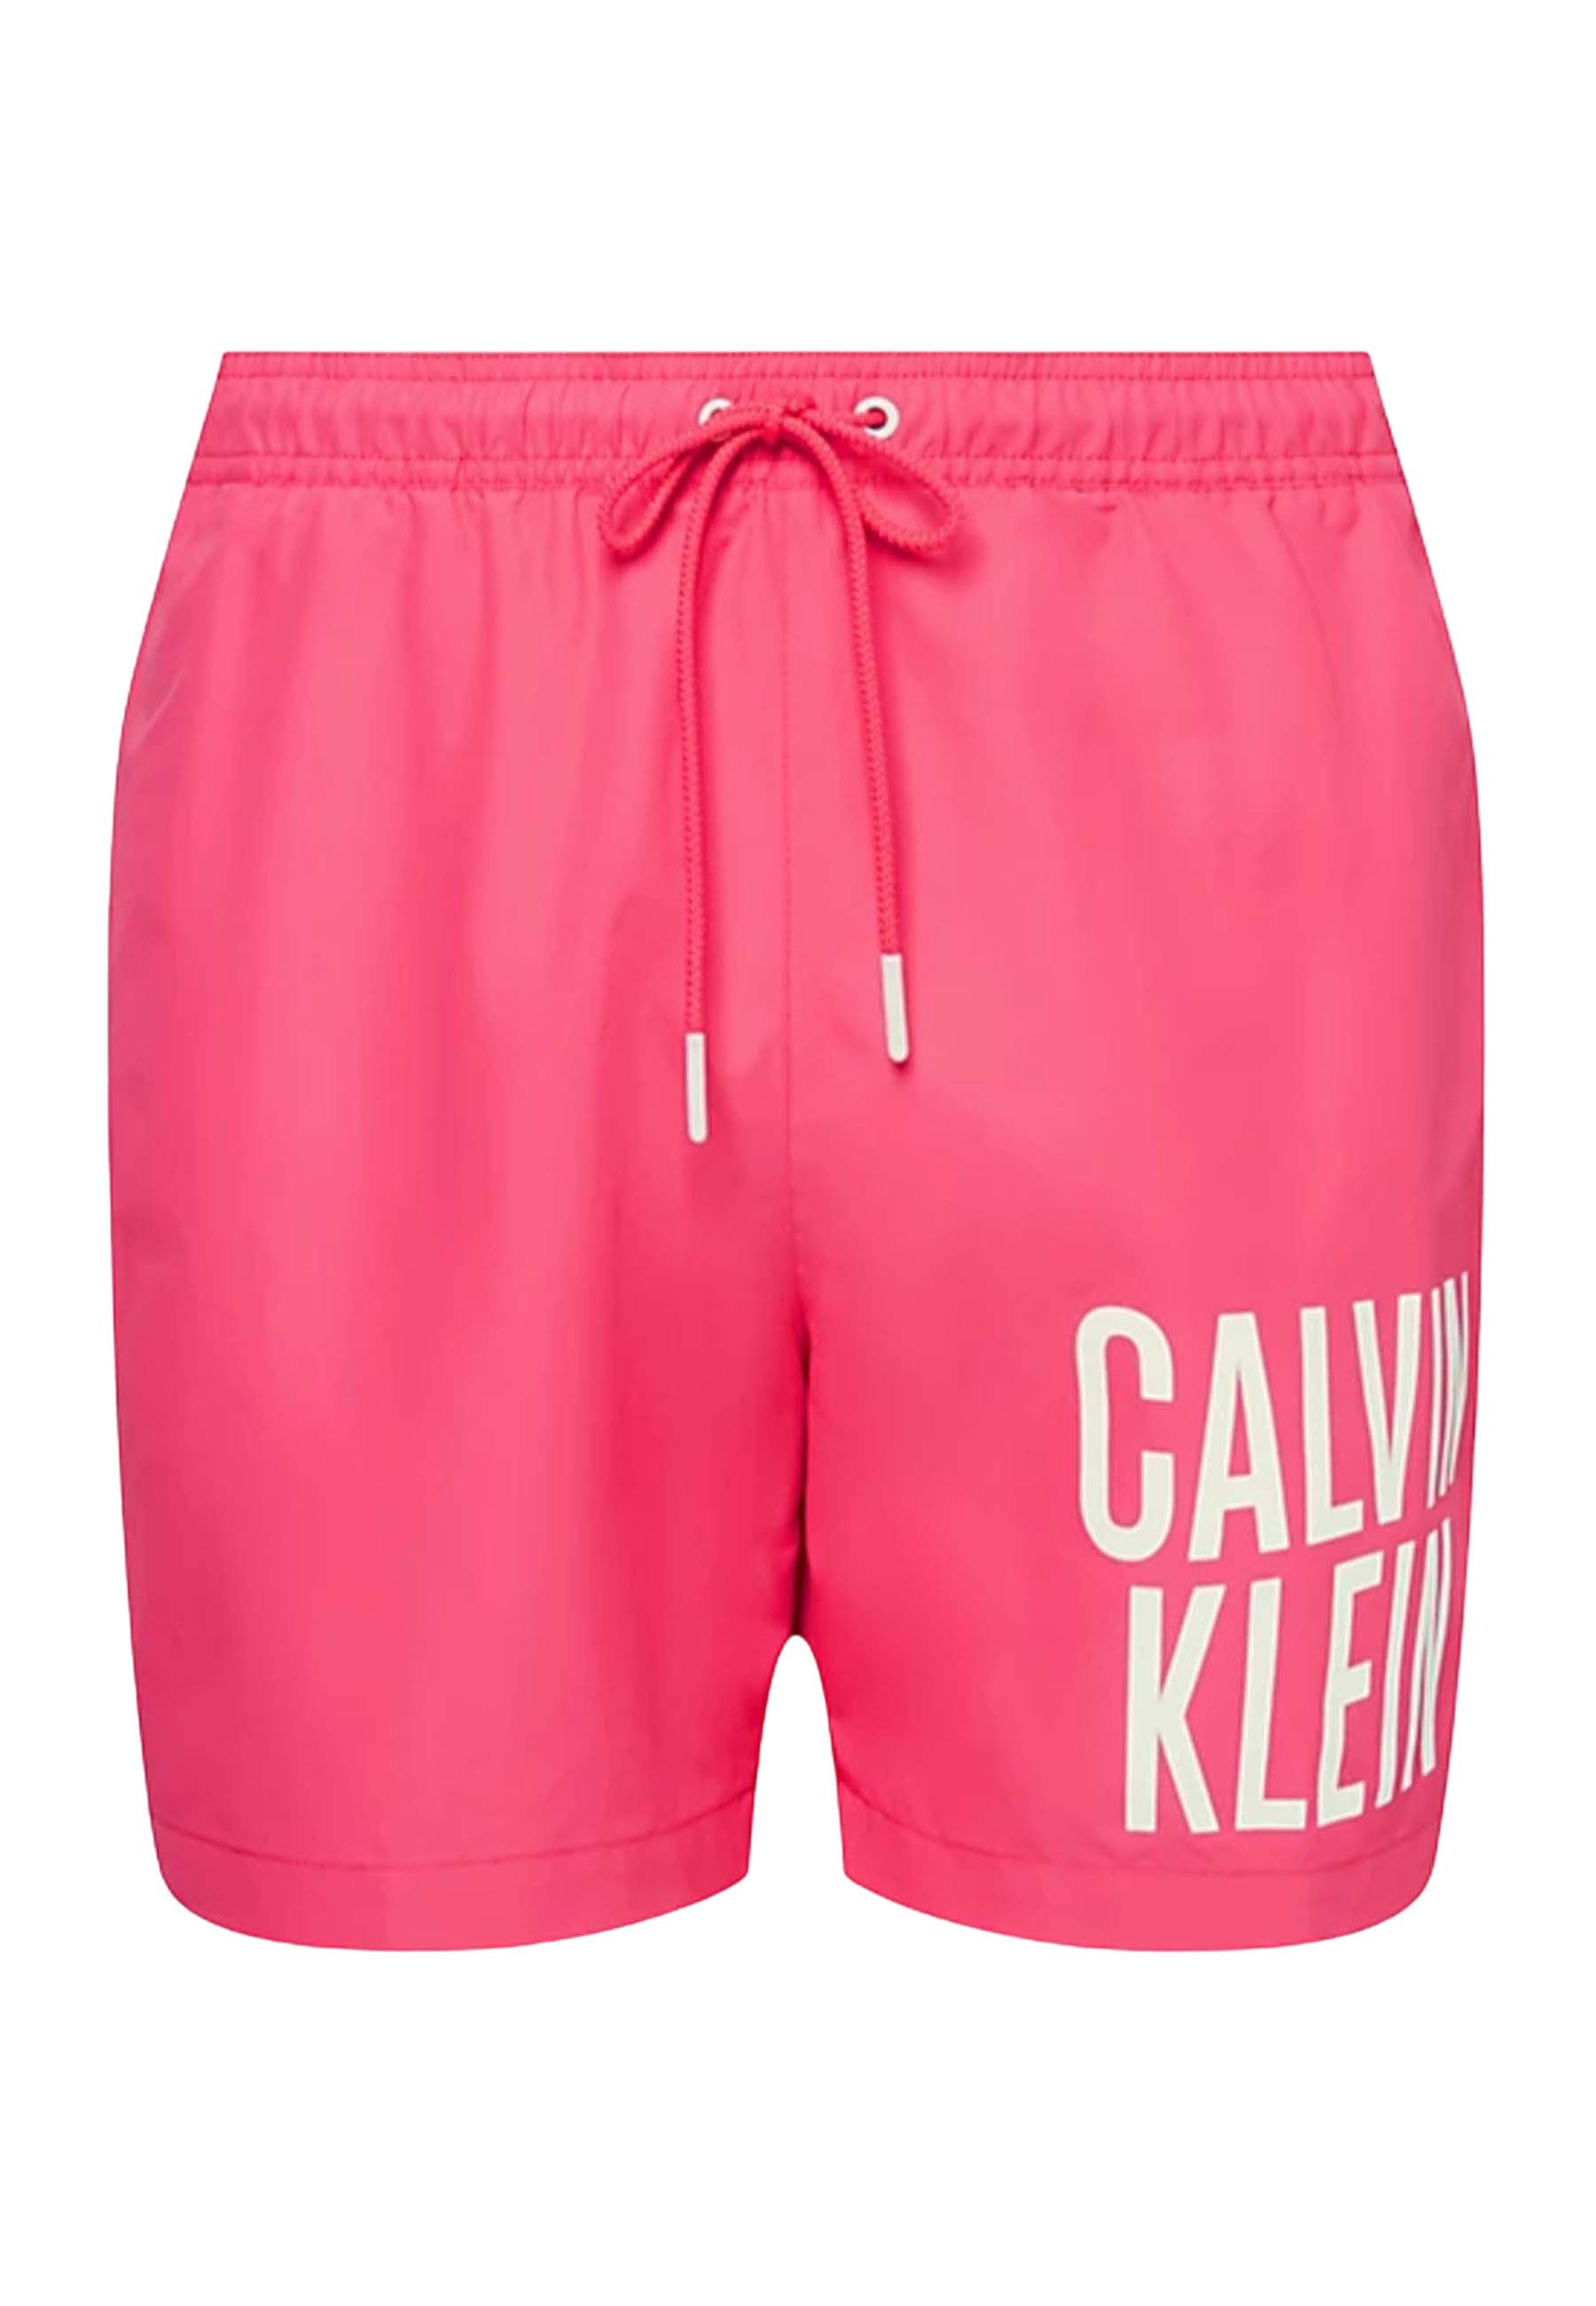 Calvin Klein Medium drawstring zwembroeken roze Heren maat M